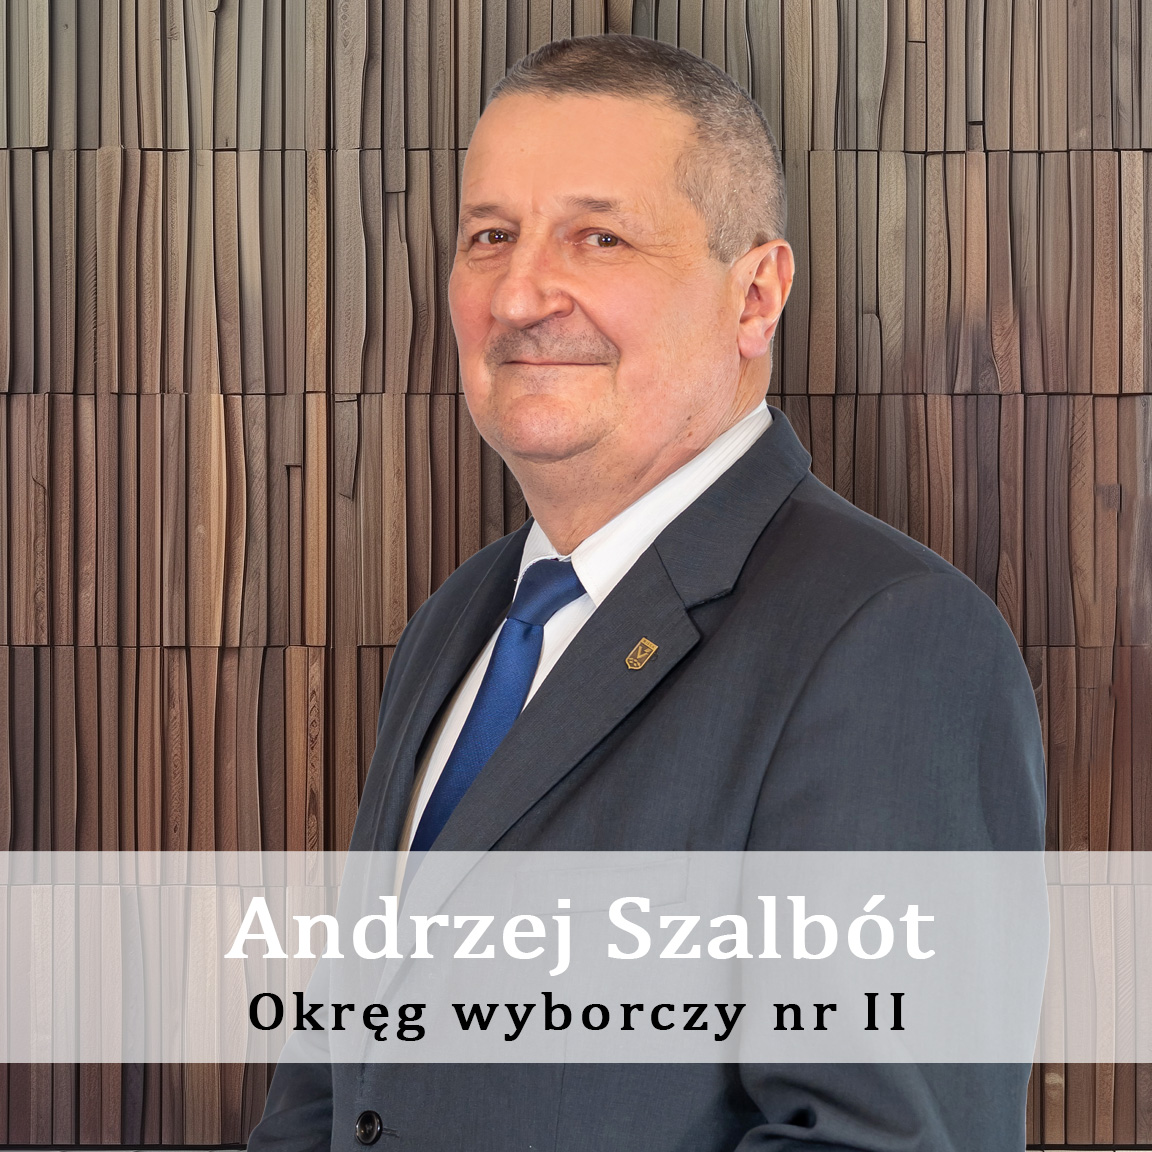 Andrzej_Szalbót-Okręg-wyporczy-nr-II-Radny-Miasto-Wisła